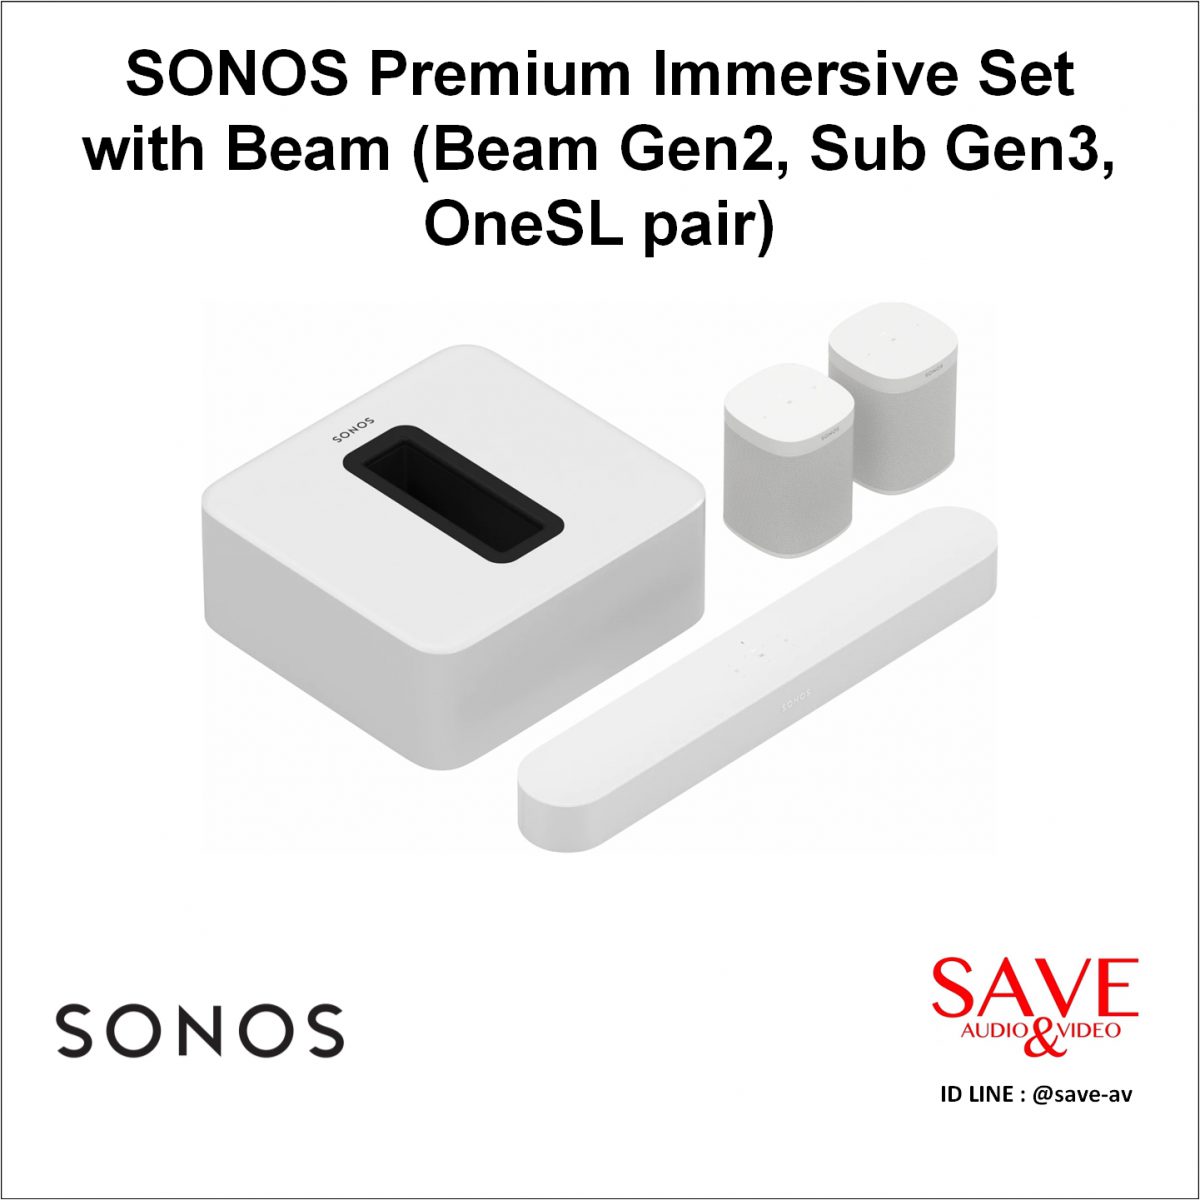 Sonos Thailand SONOS Premium Immersive Set with Beam (Beam Gen2, Sub Gen3, OneSL pair)